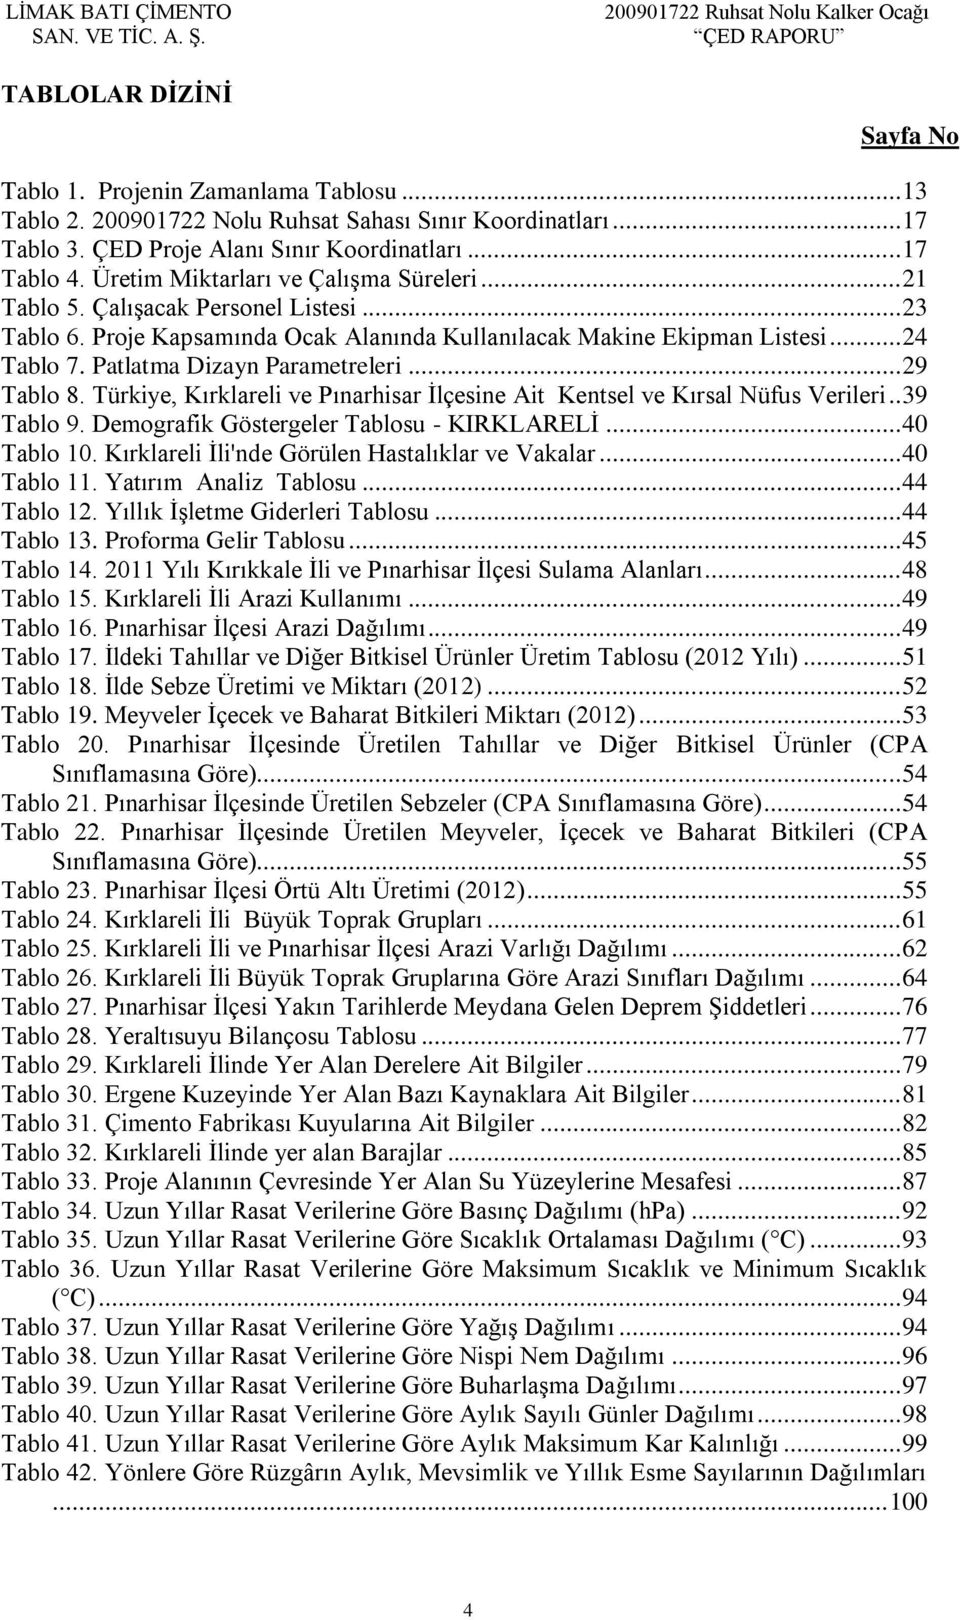 Patlatma Dizayn Parametreleri... 29 Tablo 8. Türkiye, Kırklareli ve Pınarhisar İlçesine Ait Kentsel ve Kırsal Nüfus Verileri.. 39 Tablo 9. Demografik Göstergeler Tablosu - KIRKLARELİ... 40 Tablo 10.